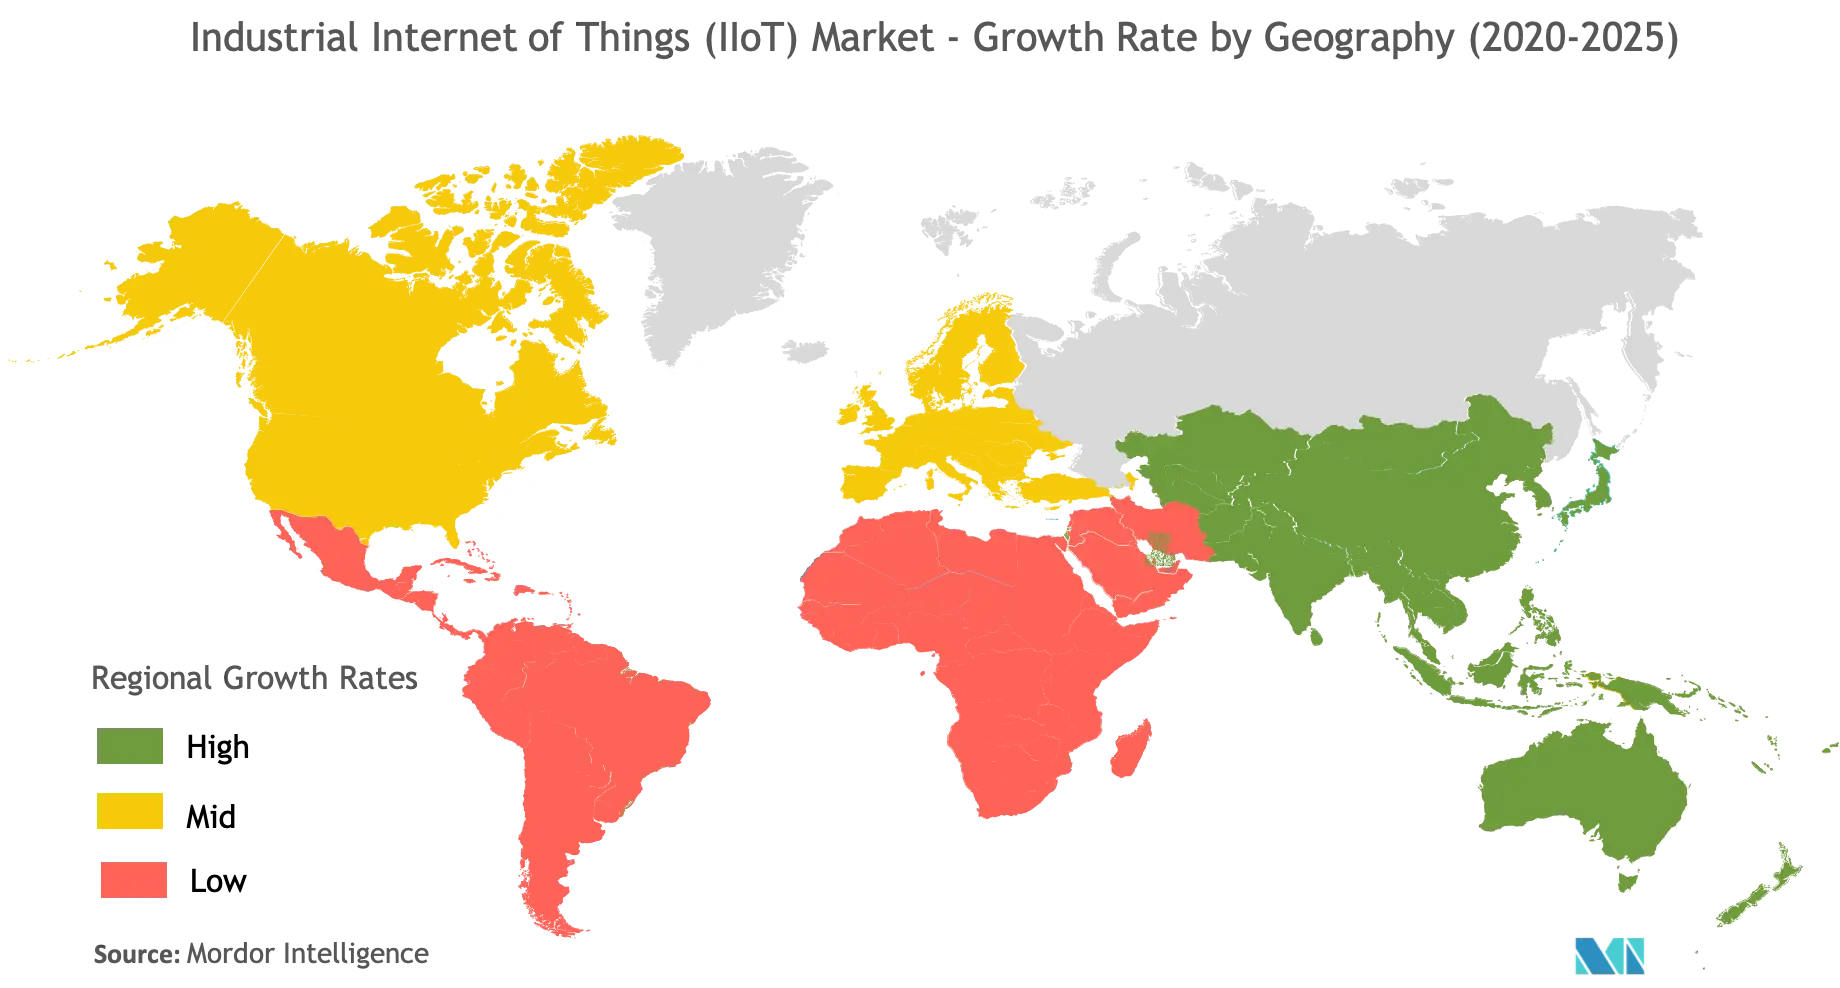  Industrial Internet of Things (IIoT) Market Analysis